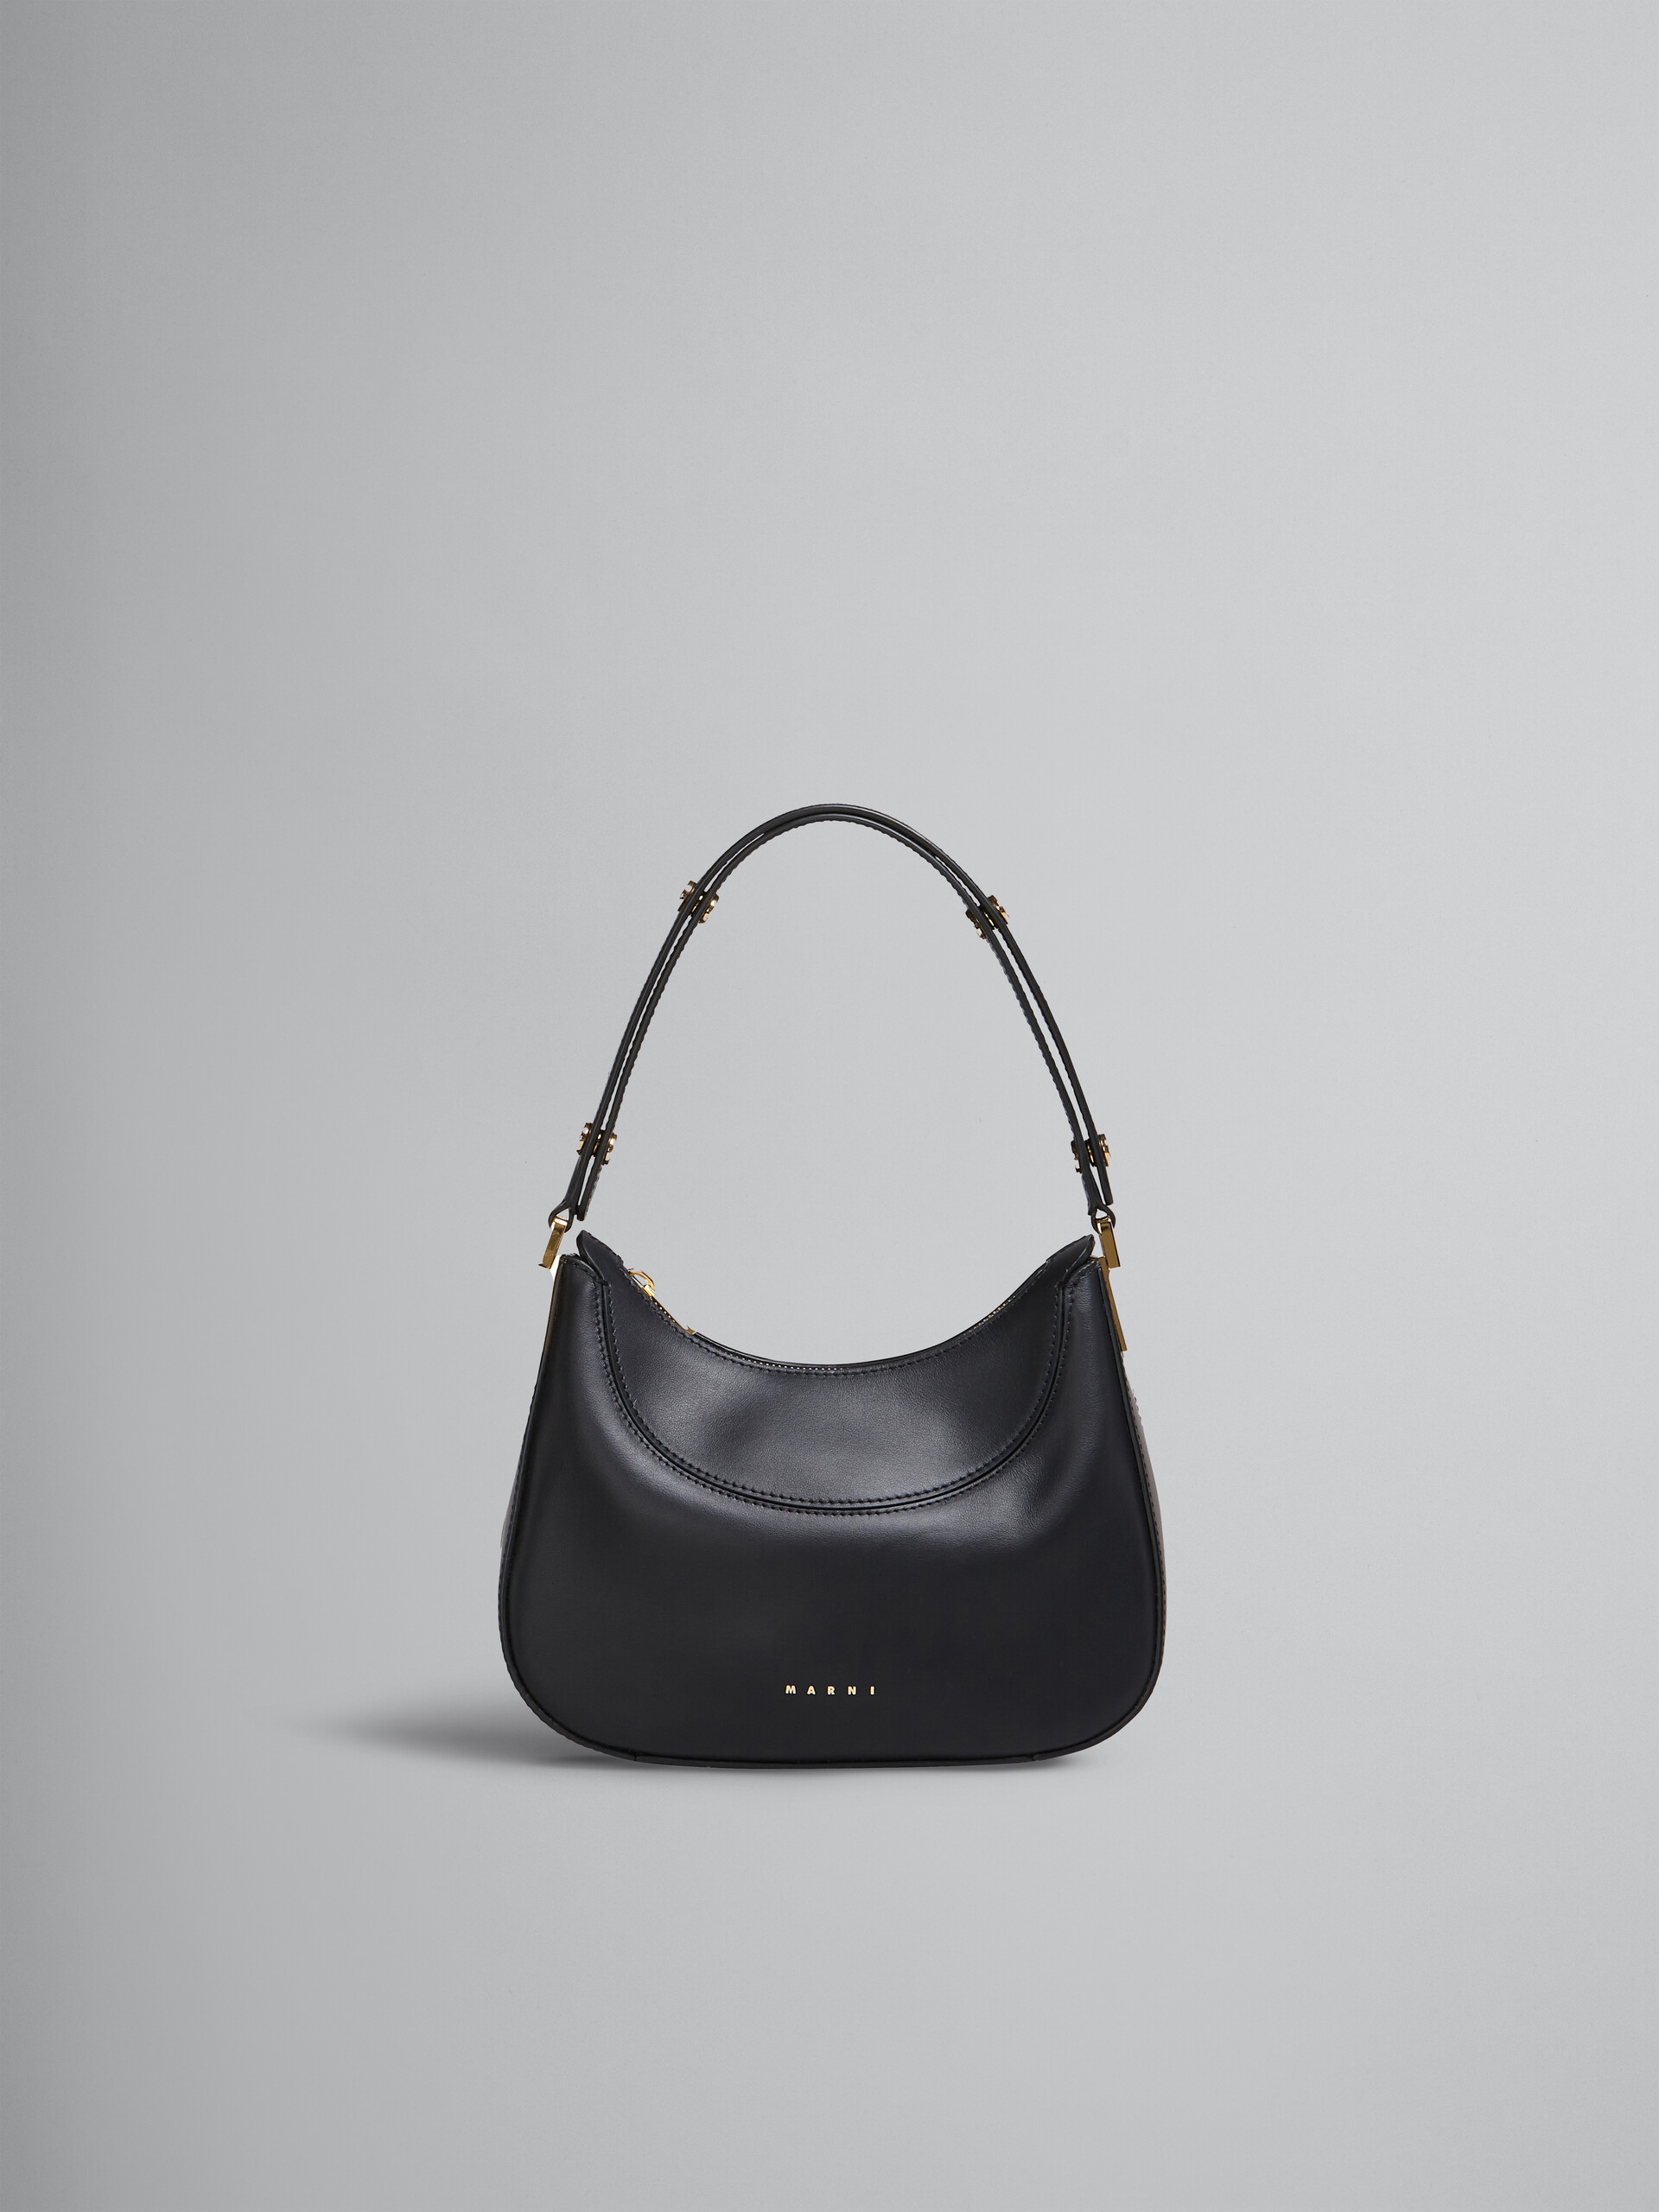 Mini-sac Milano en cuir noir - Sacs à main - Image 1